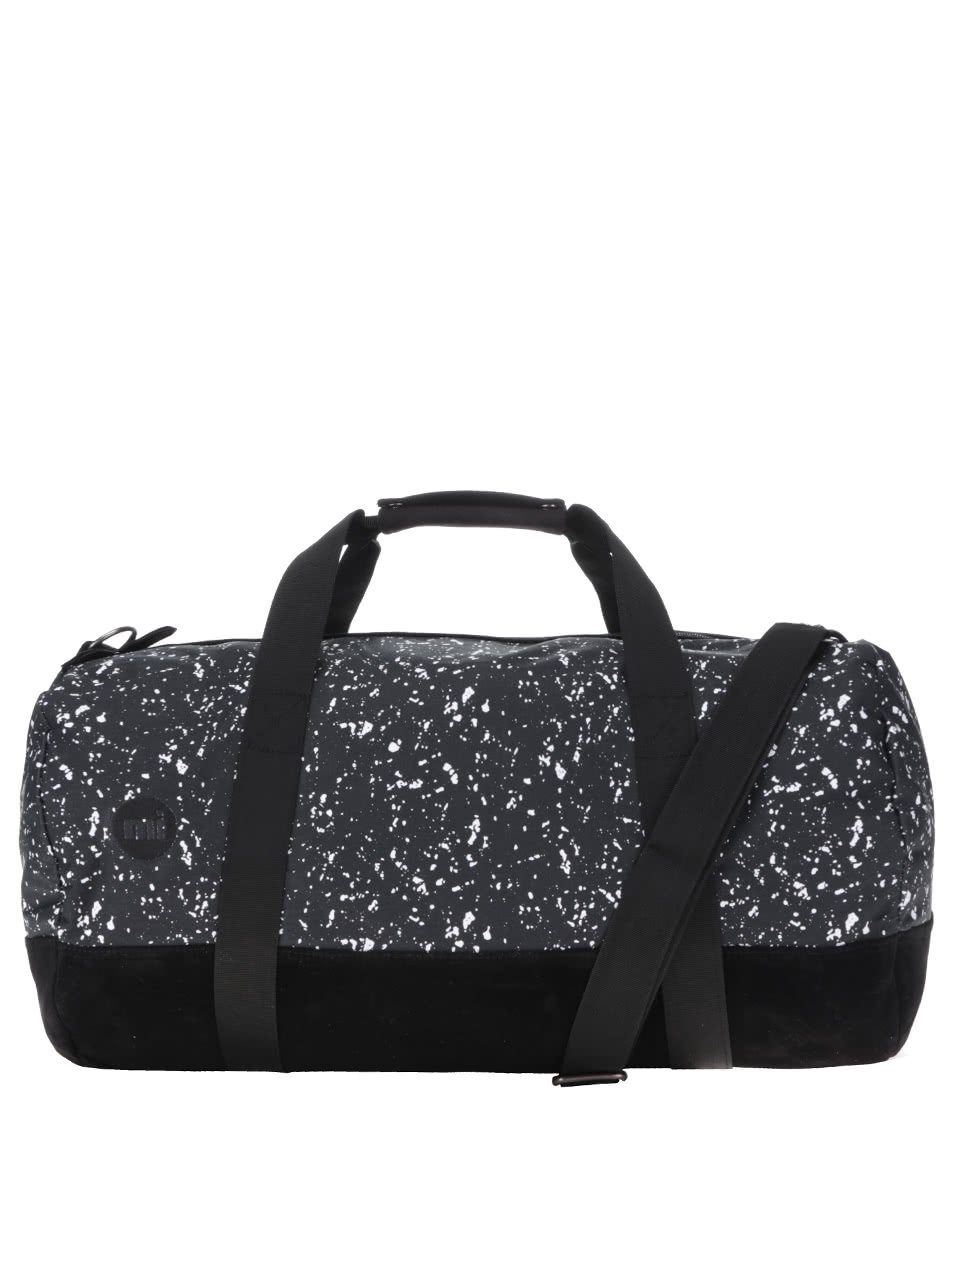 Černá sportovní taška s bílým vzorem Mi-Pac Duffel Splattered